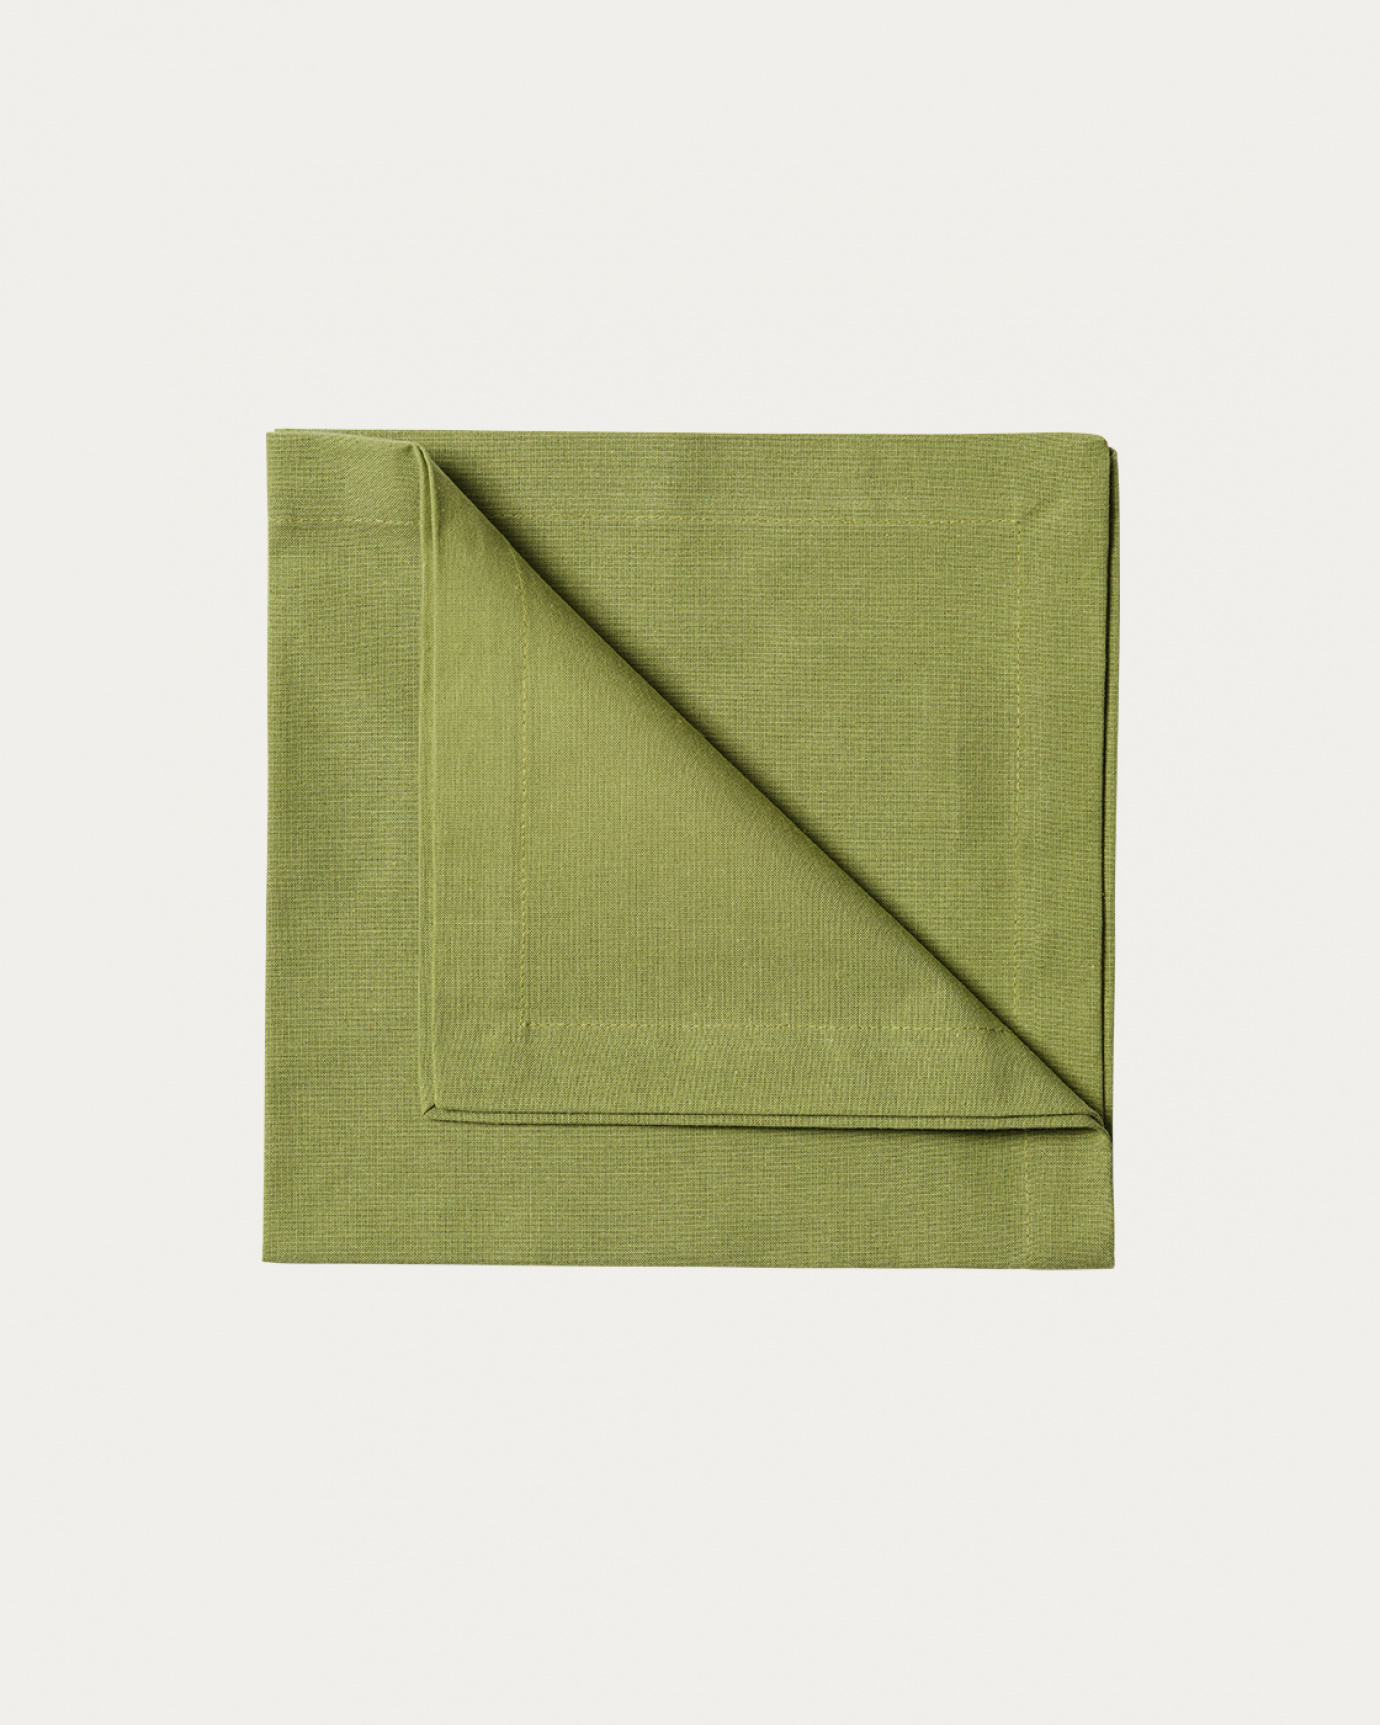 Image du produit serviette de table ROBERT vert mousse en coton doux de LINUM DESIGN. Taille 45 x 45 cm et vendu en lot de 4.